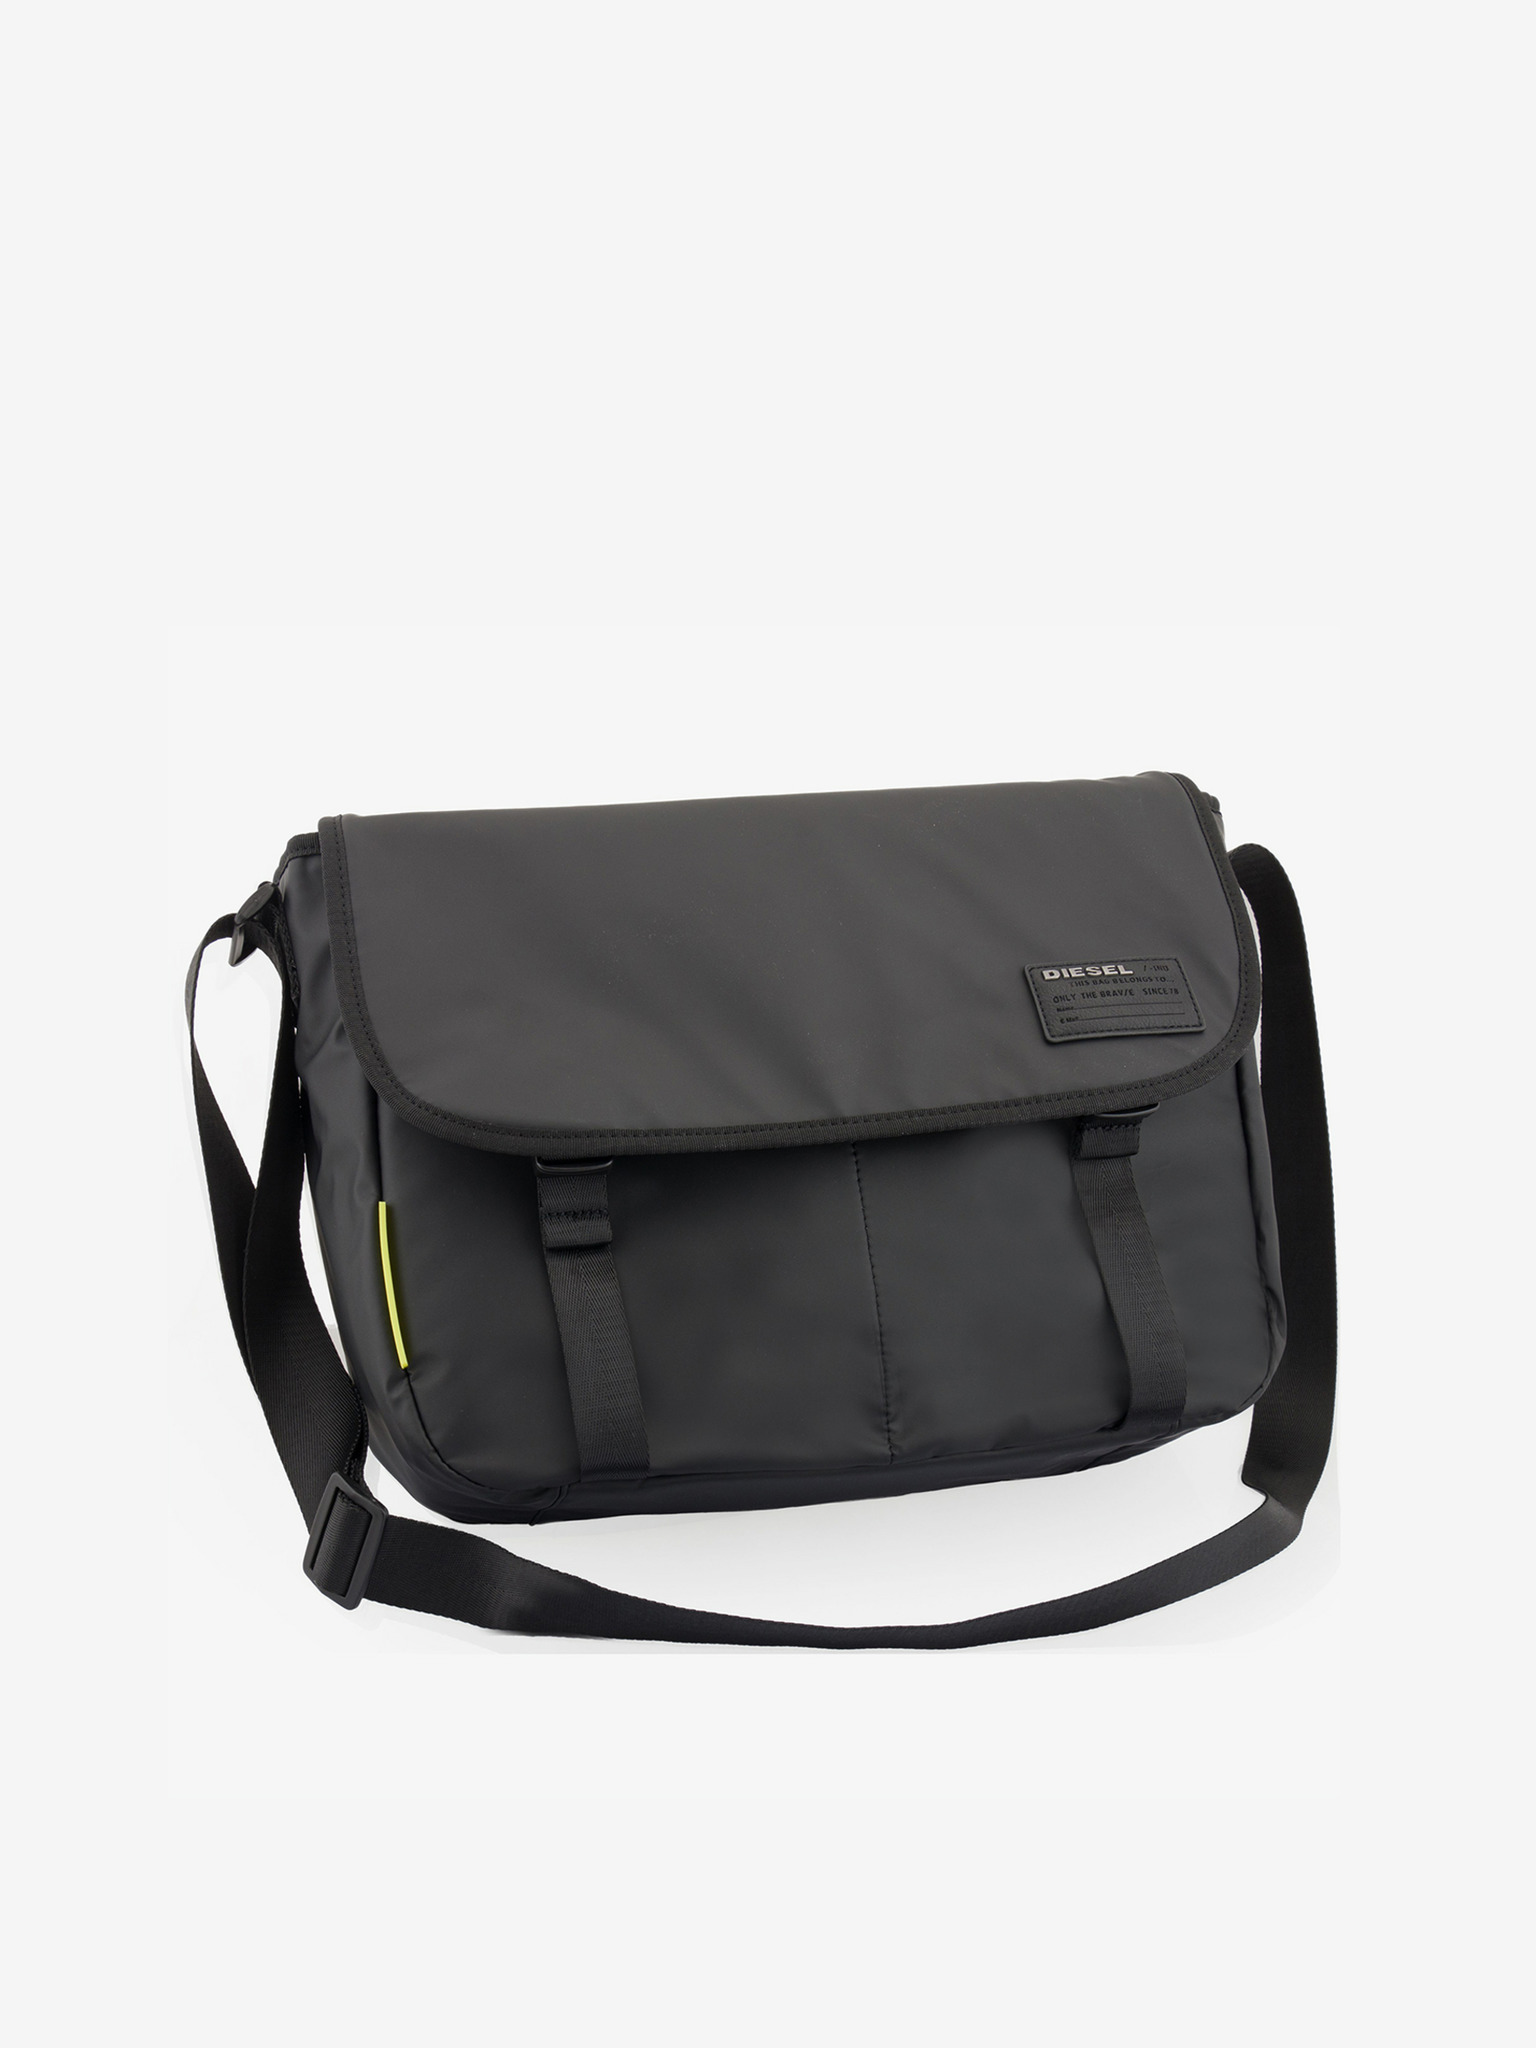  Diesel Progress Messenger Bag,Black,One Size